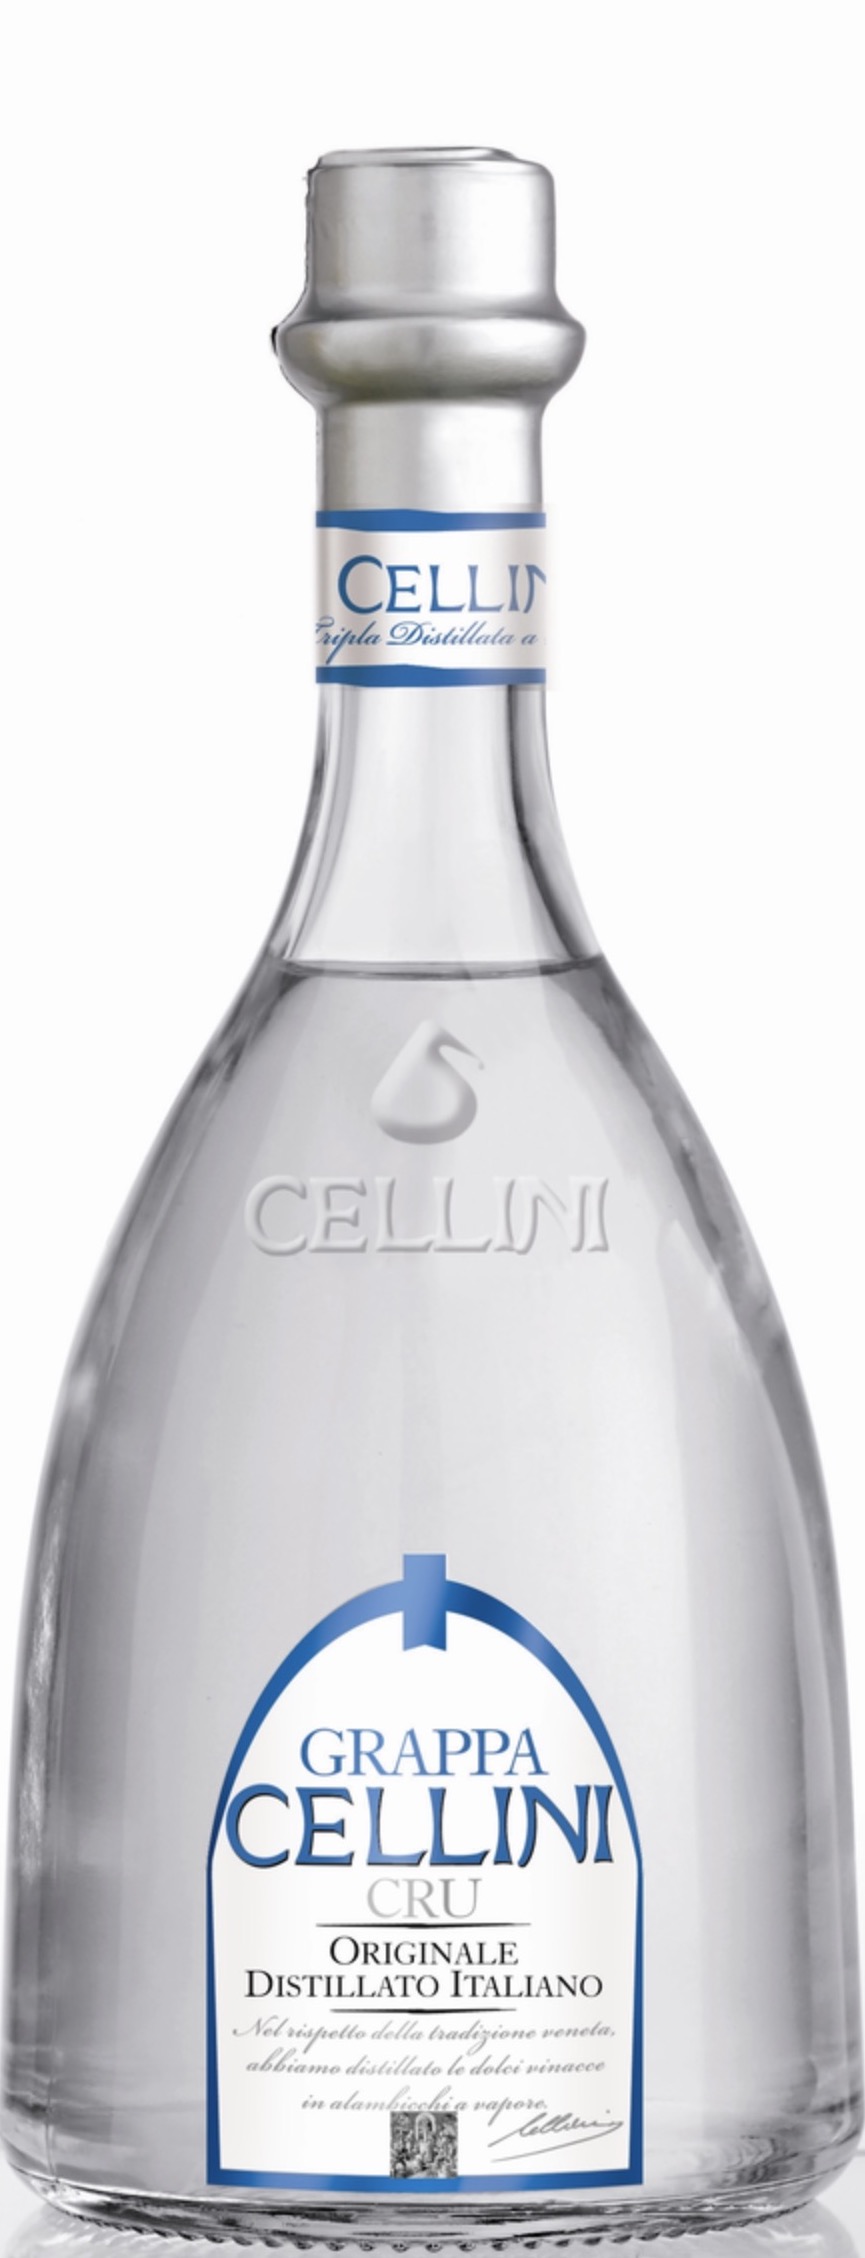 Cellini Grappa Cru 38% vol. 0,7L